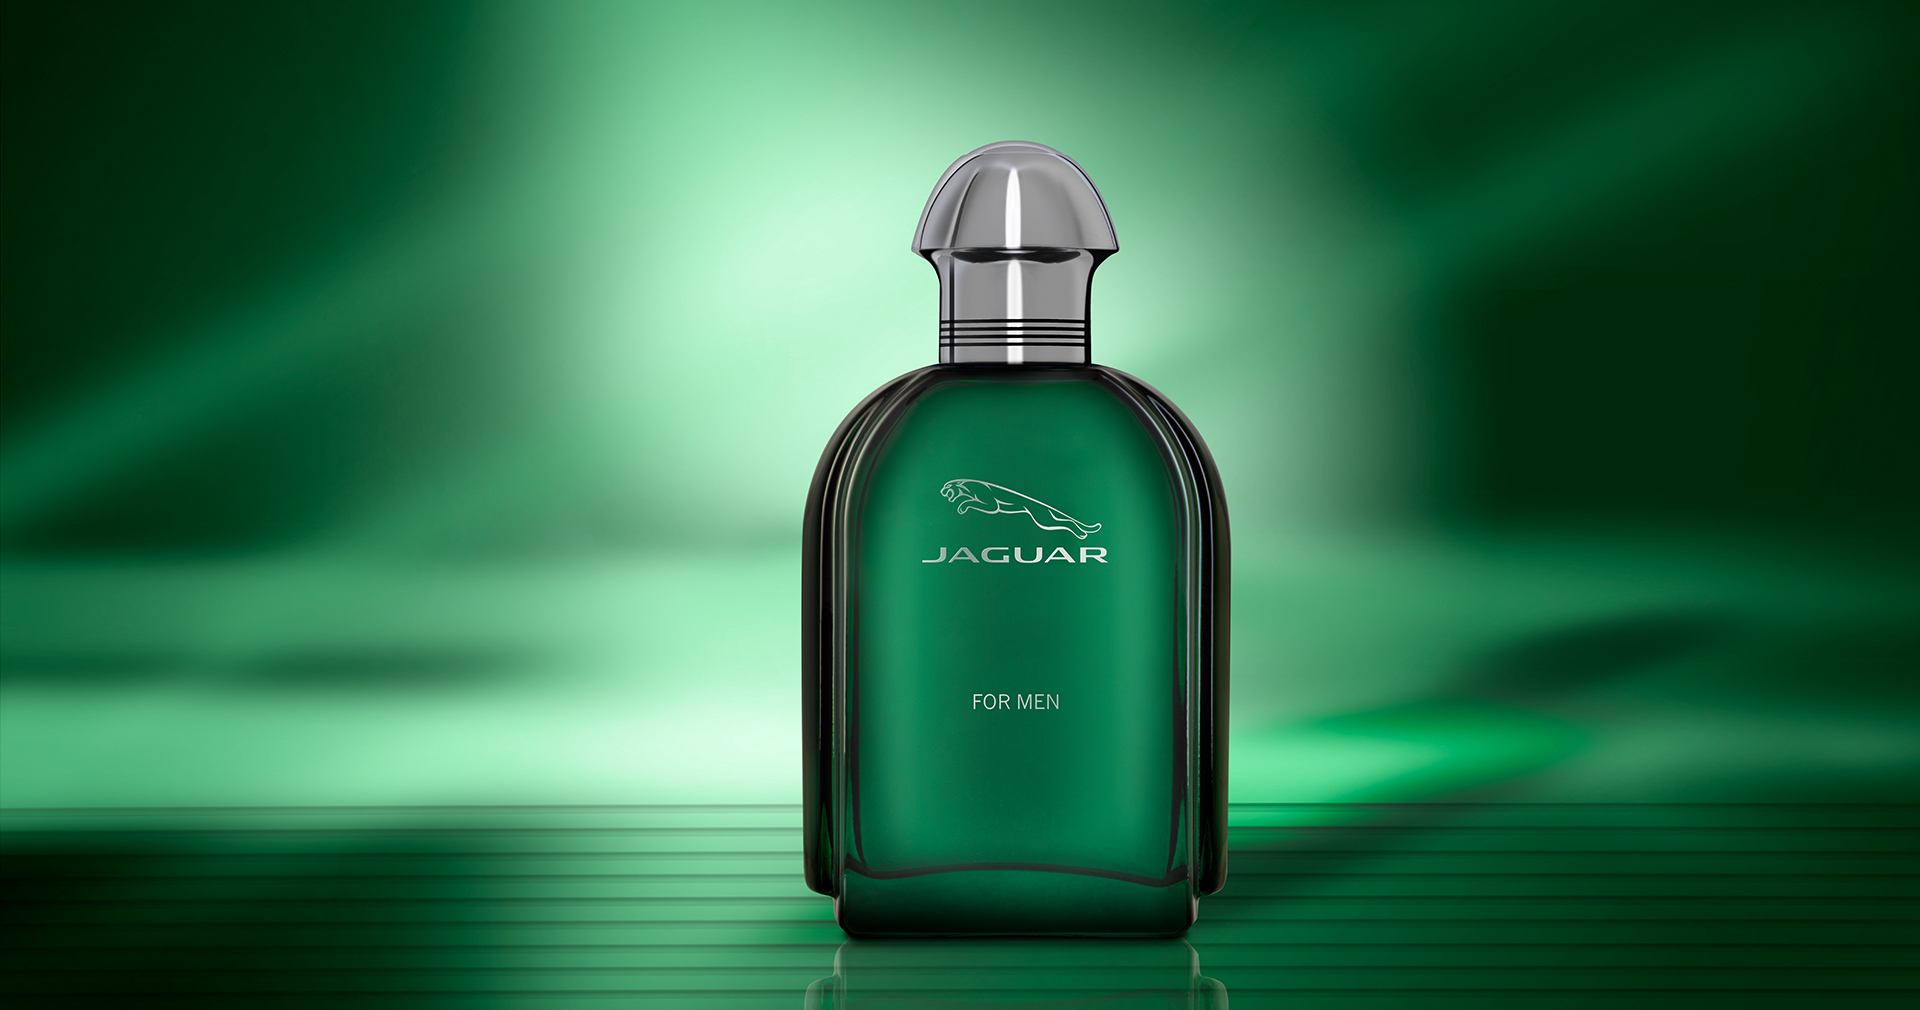 For Men | Jaguar Fragrances